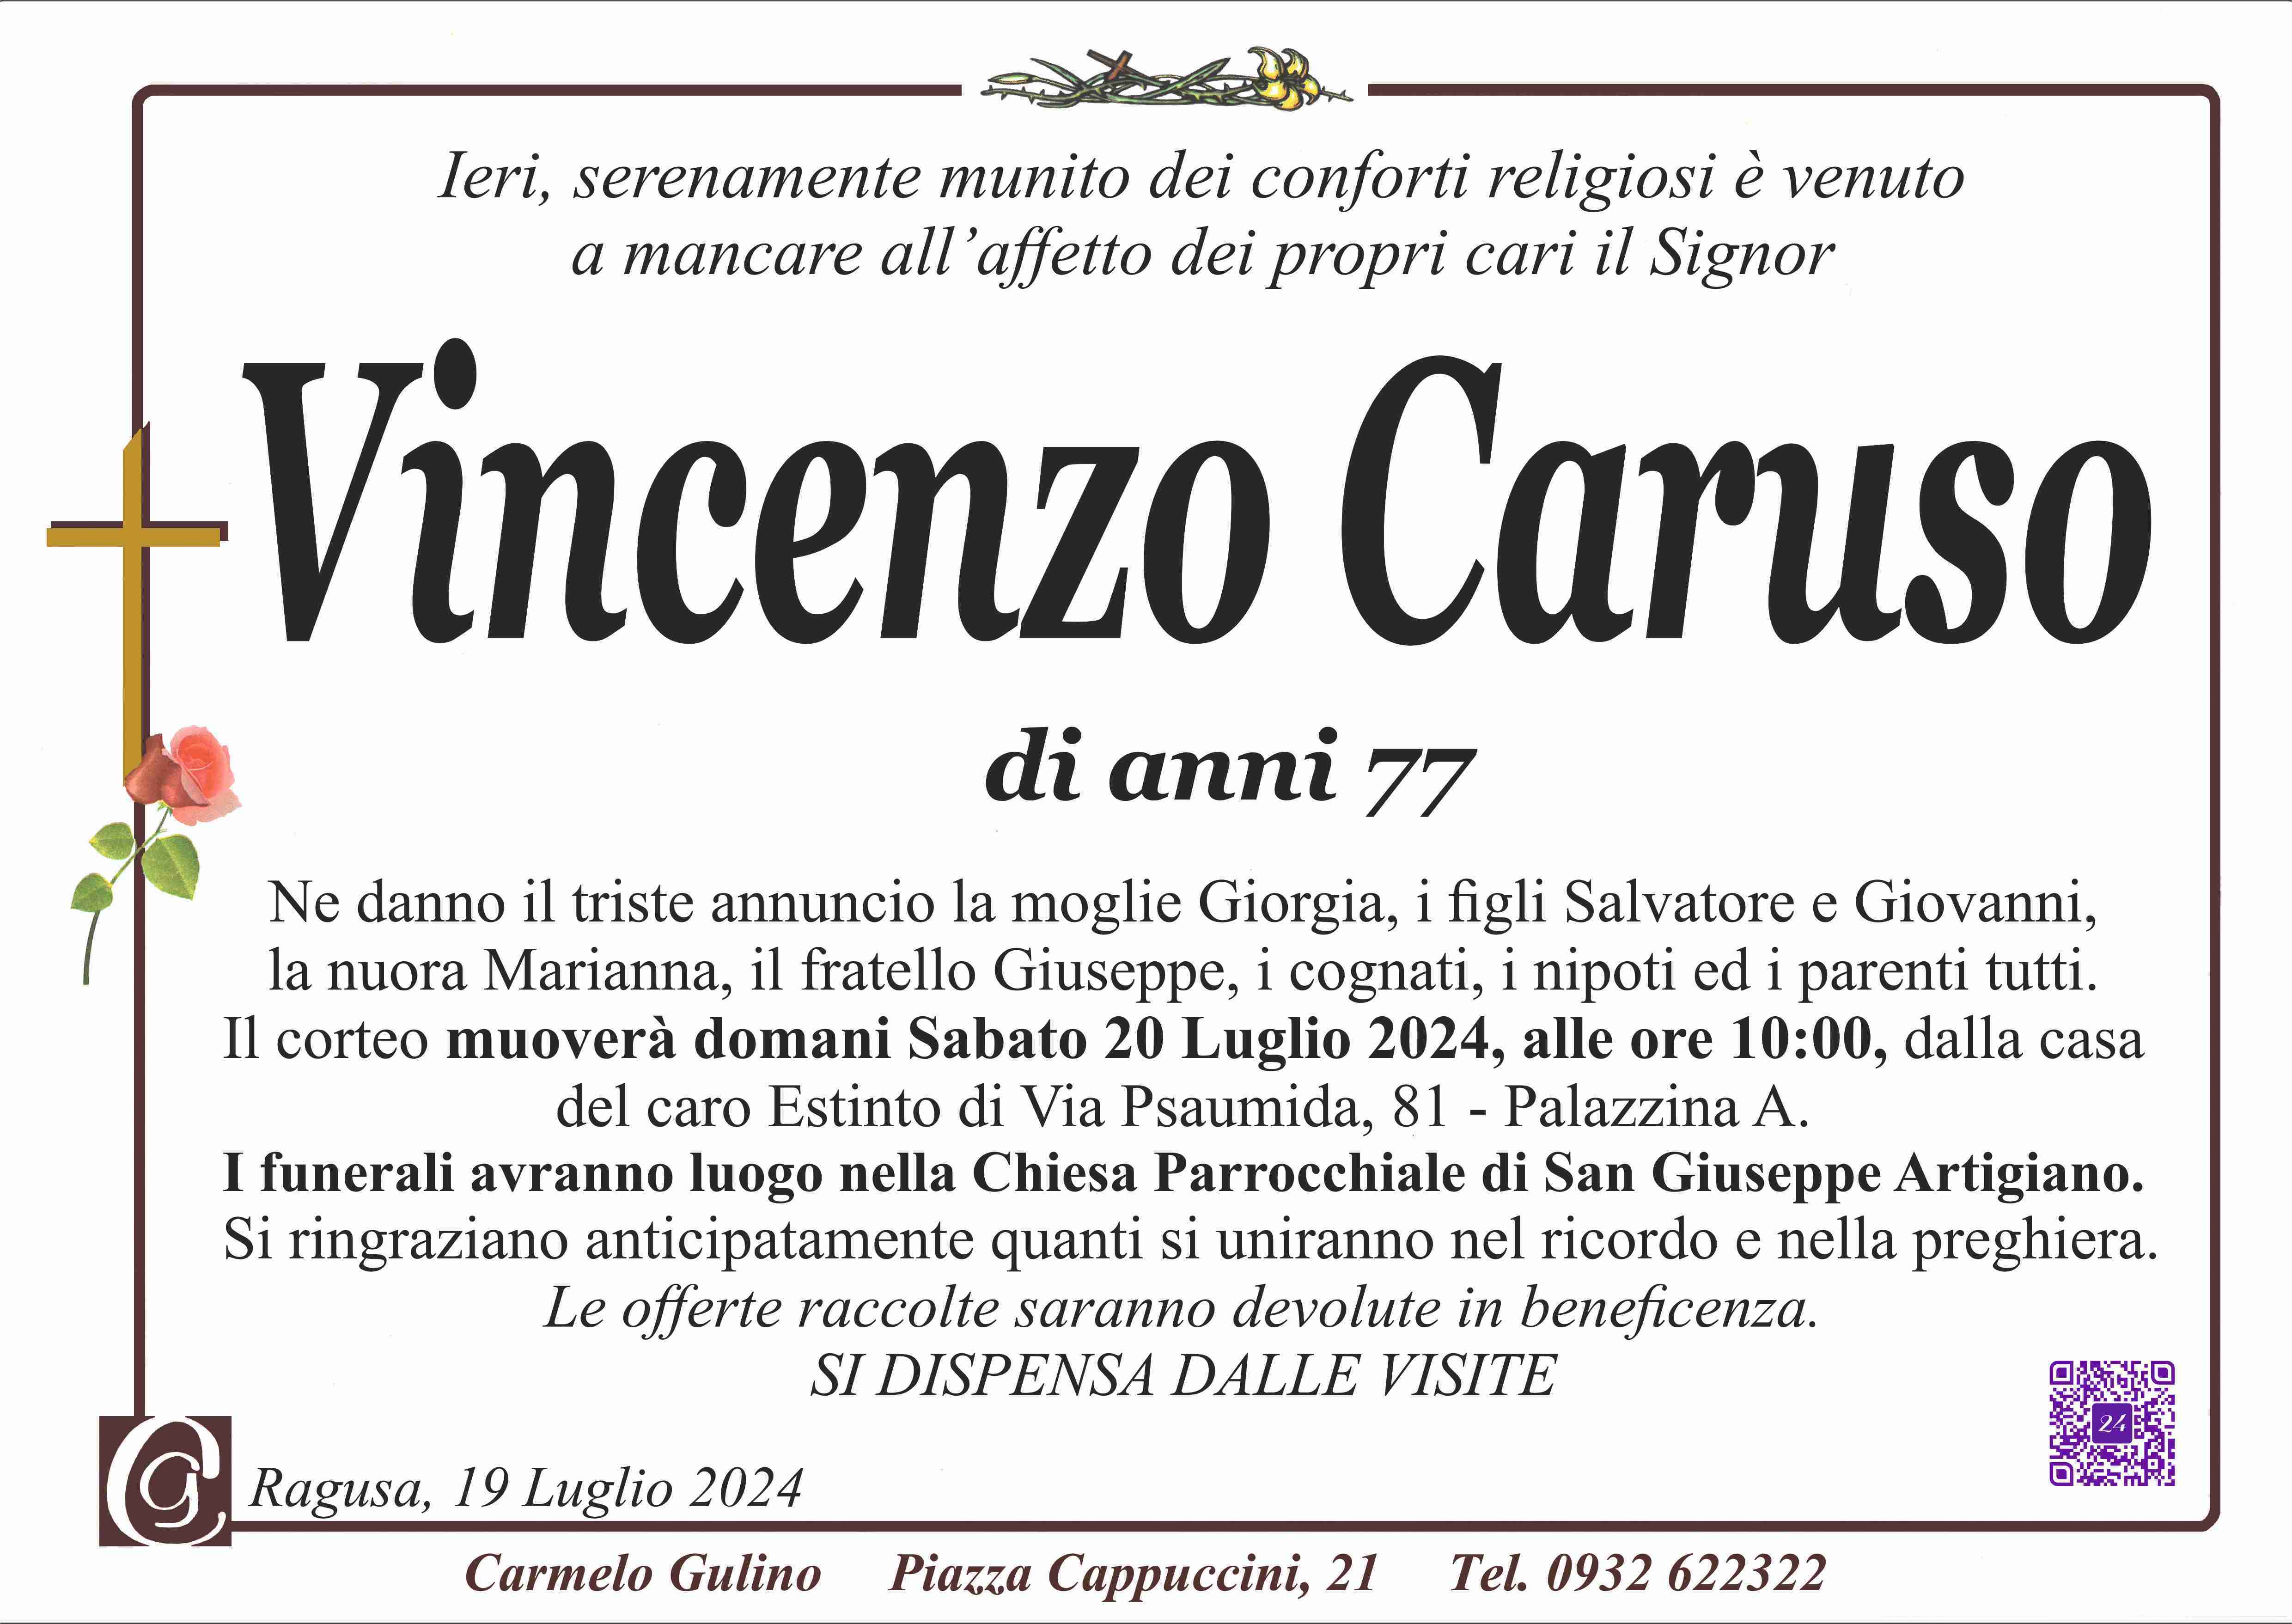 Vincenzo Caruso